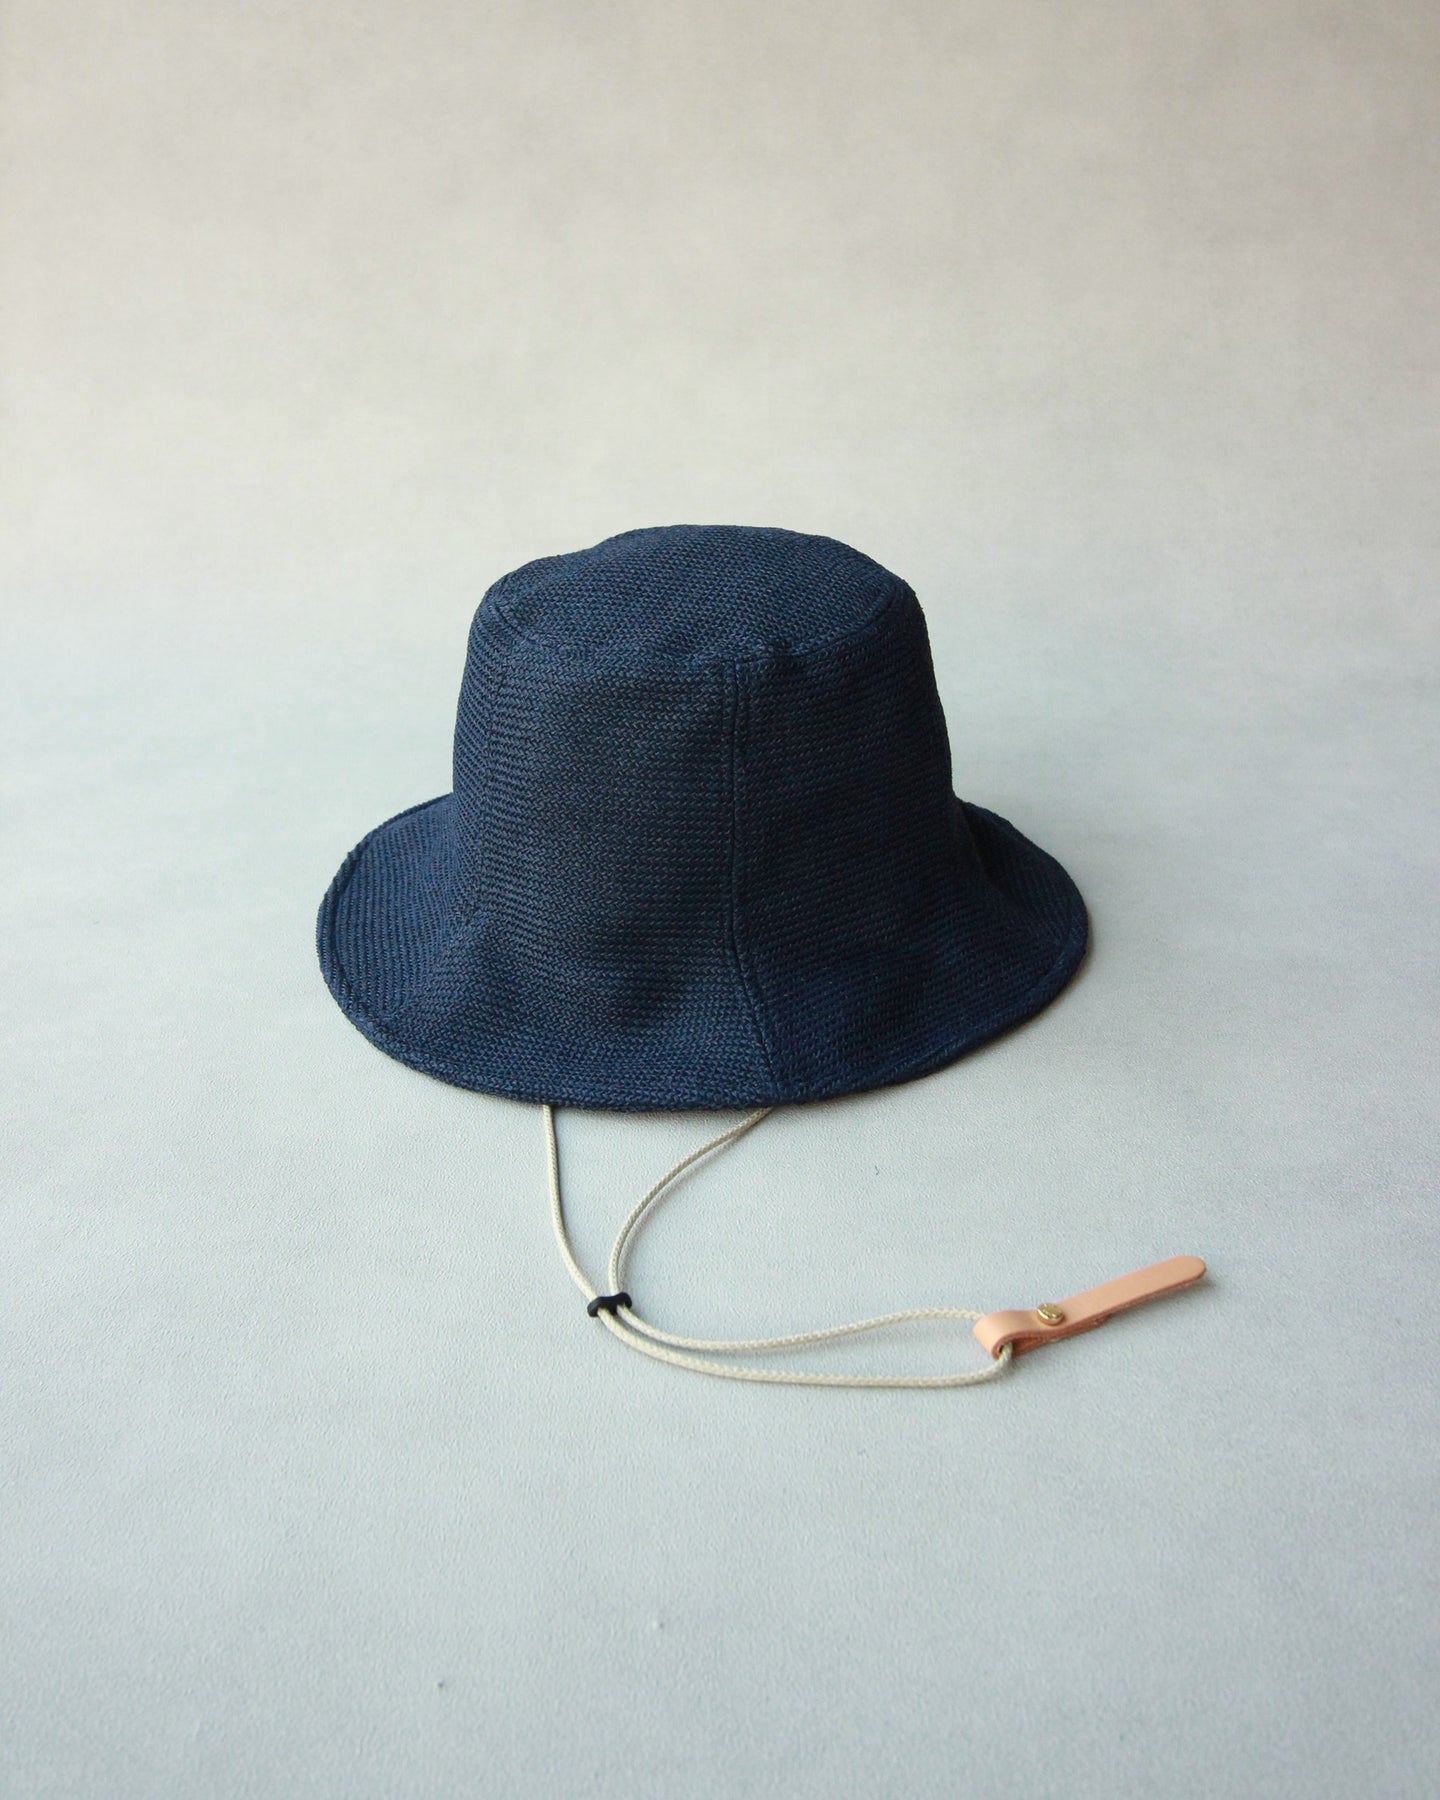 N-1212 / Celosia Hat